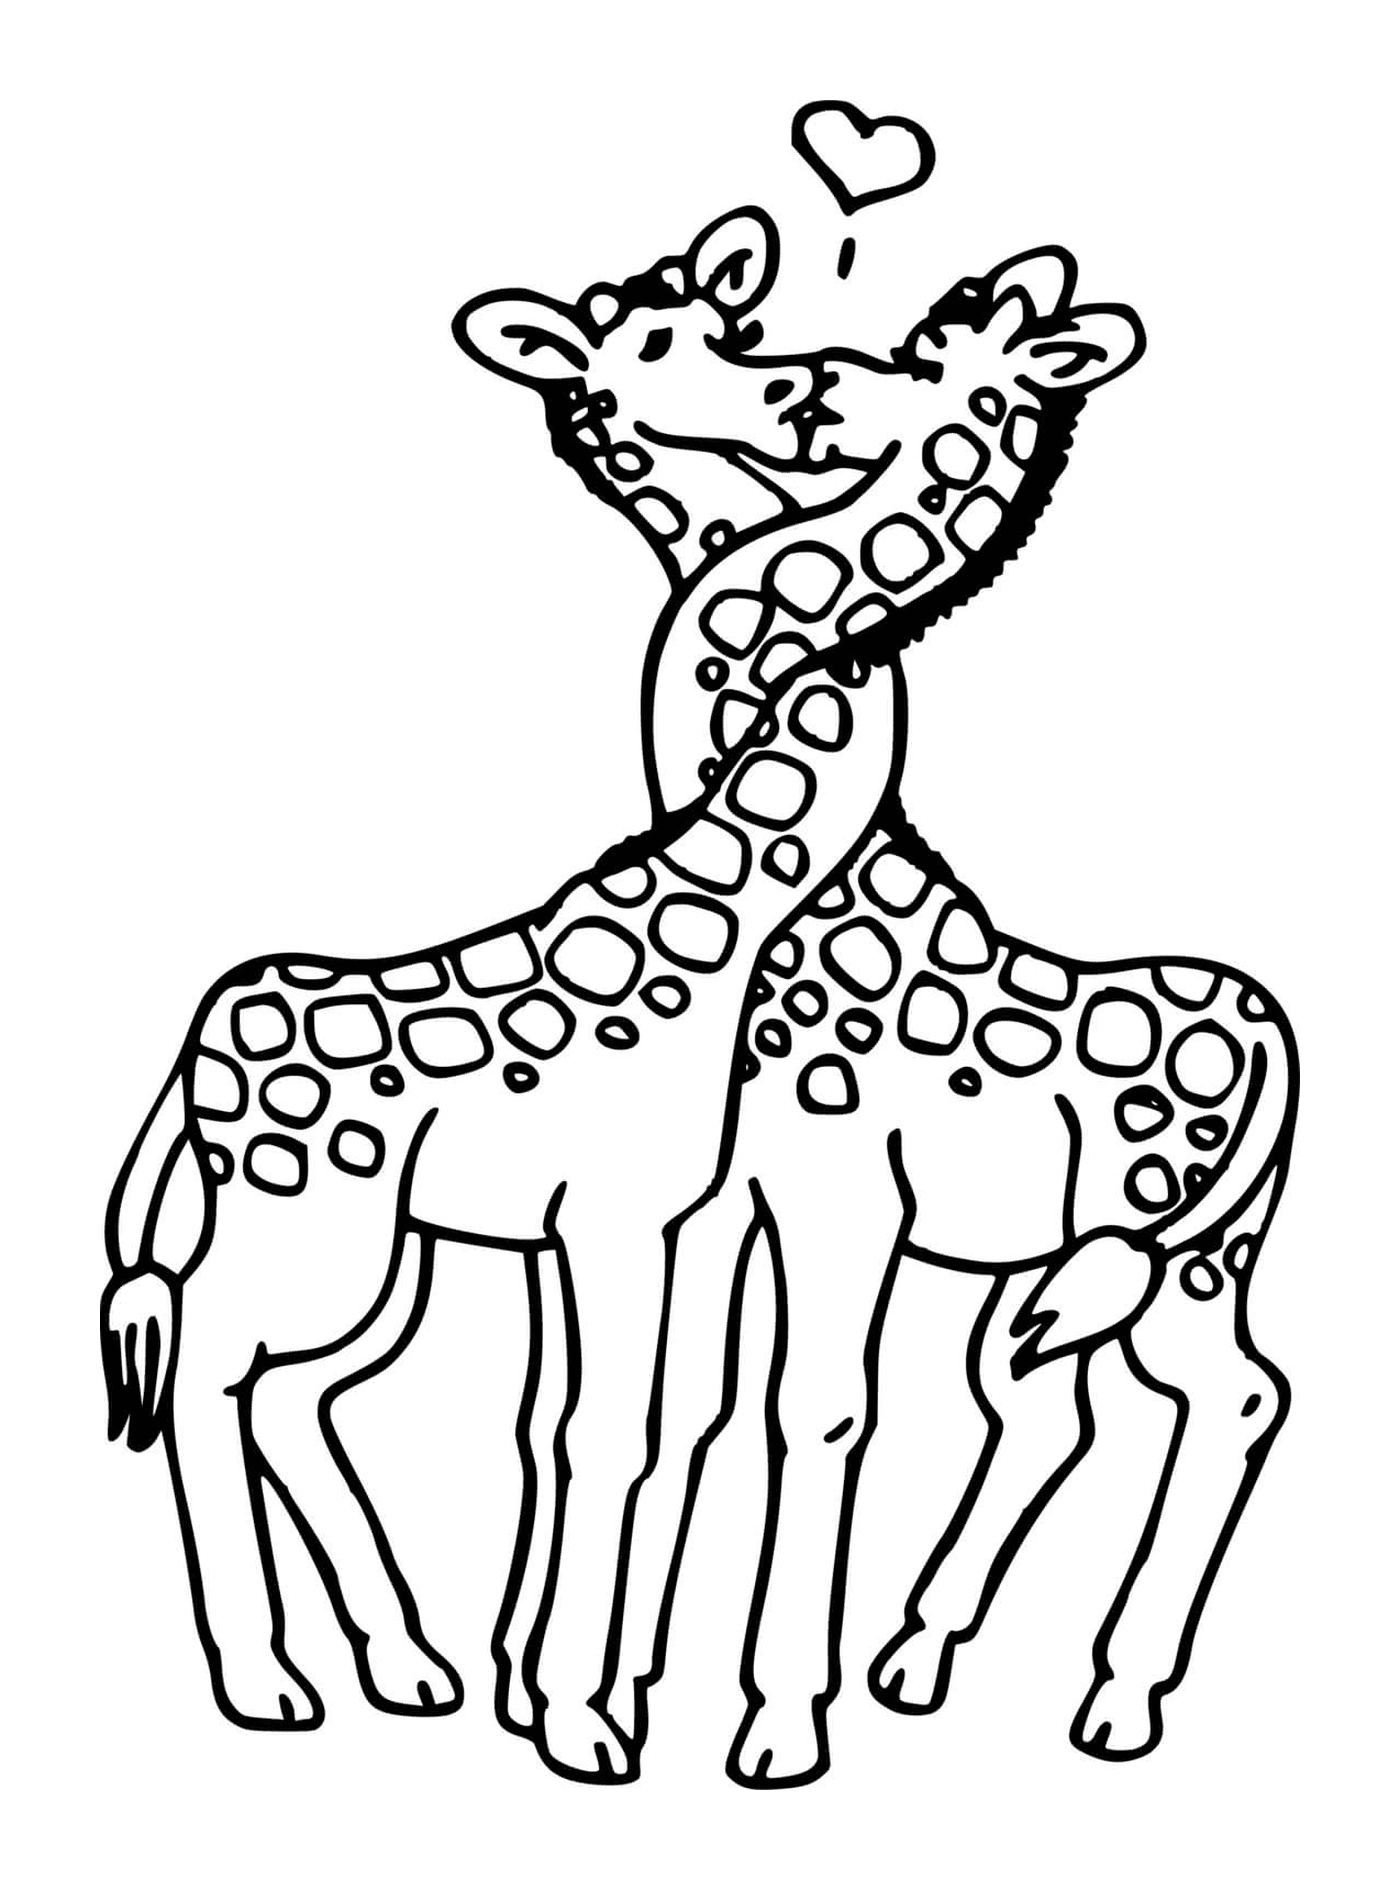  Zwei Giraffen küssen sich 